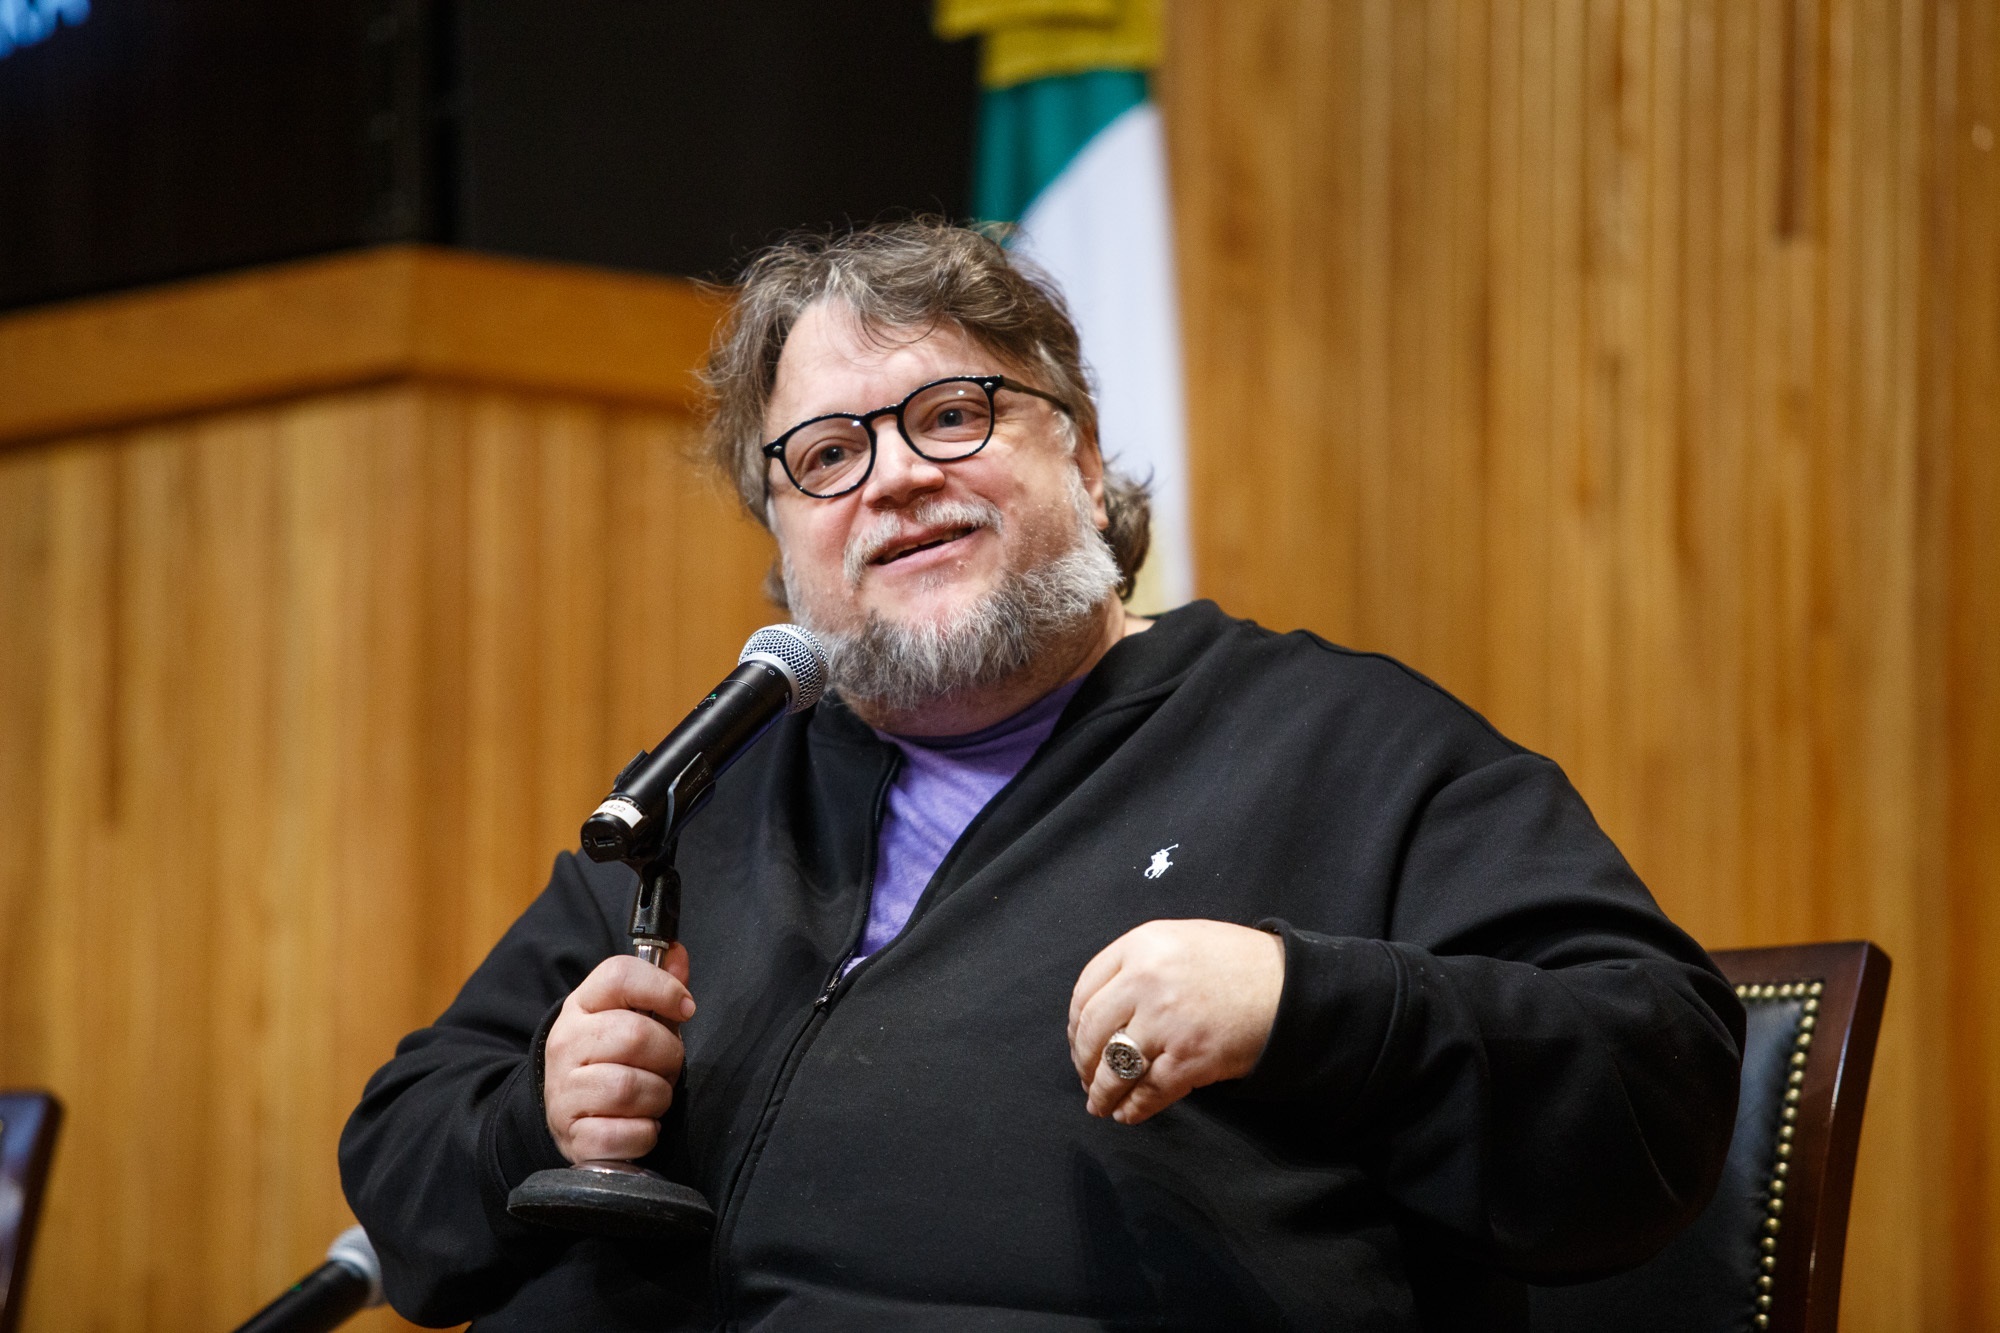 Premios Oscar 2022: “El callejón de las almas perdidas” de Guillermo del Toro recibió 4 nominaciones